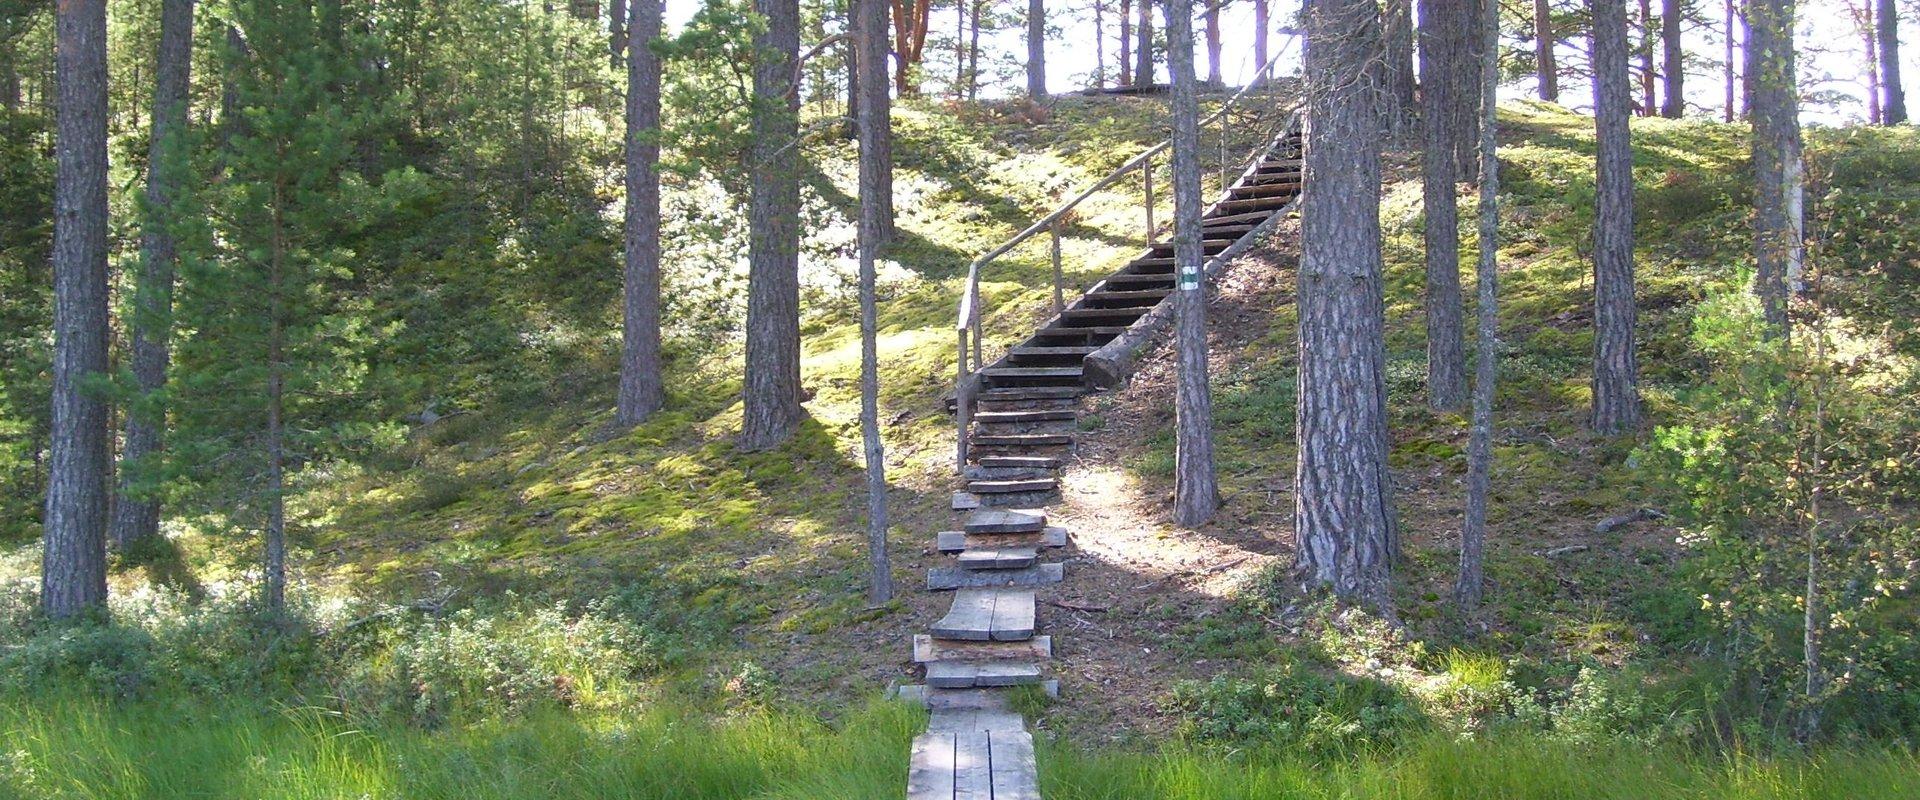 RMK Majakivi–Pikanõmme study trail